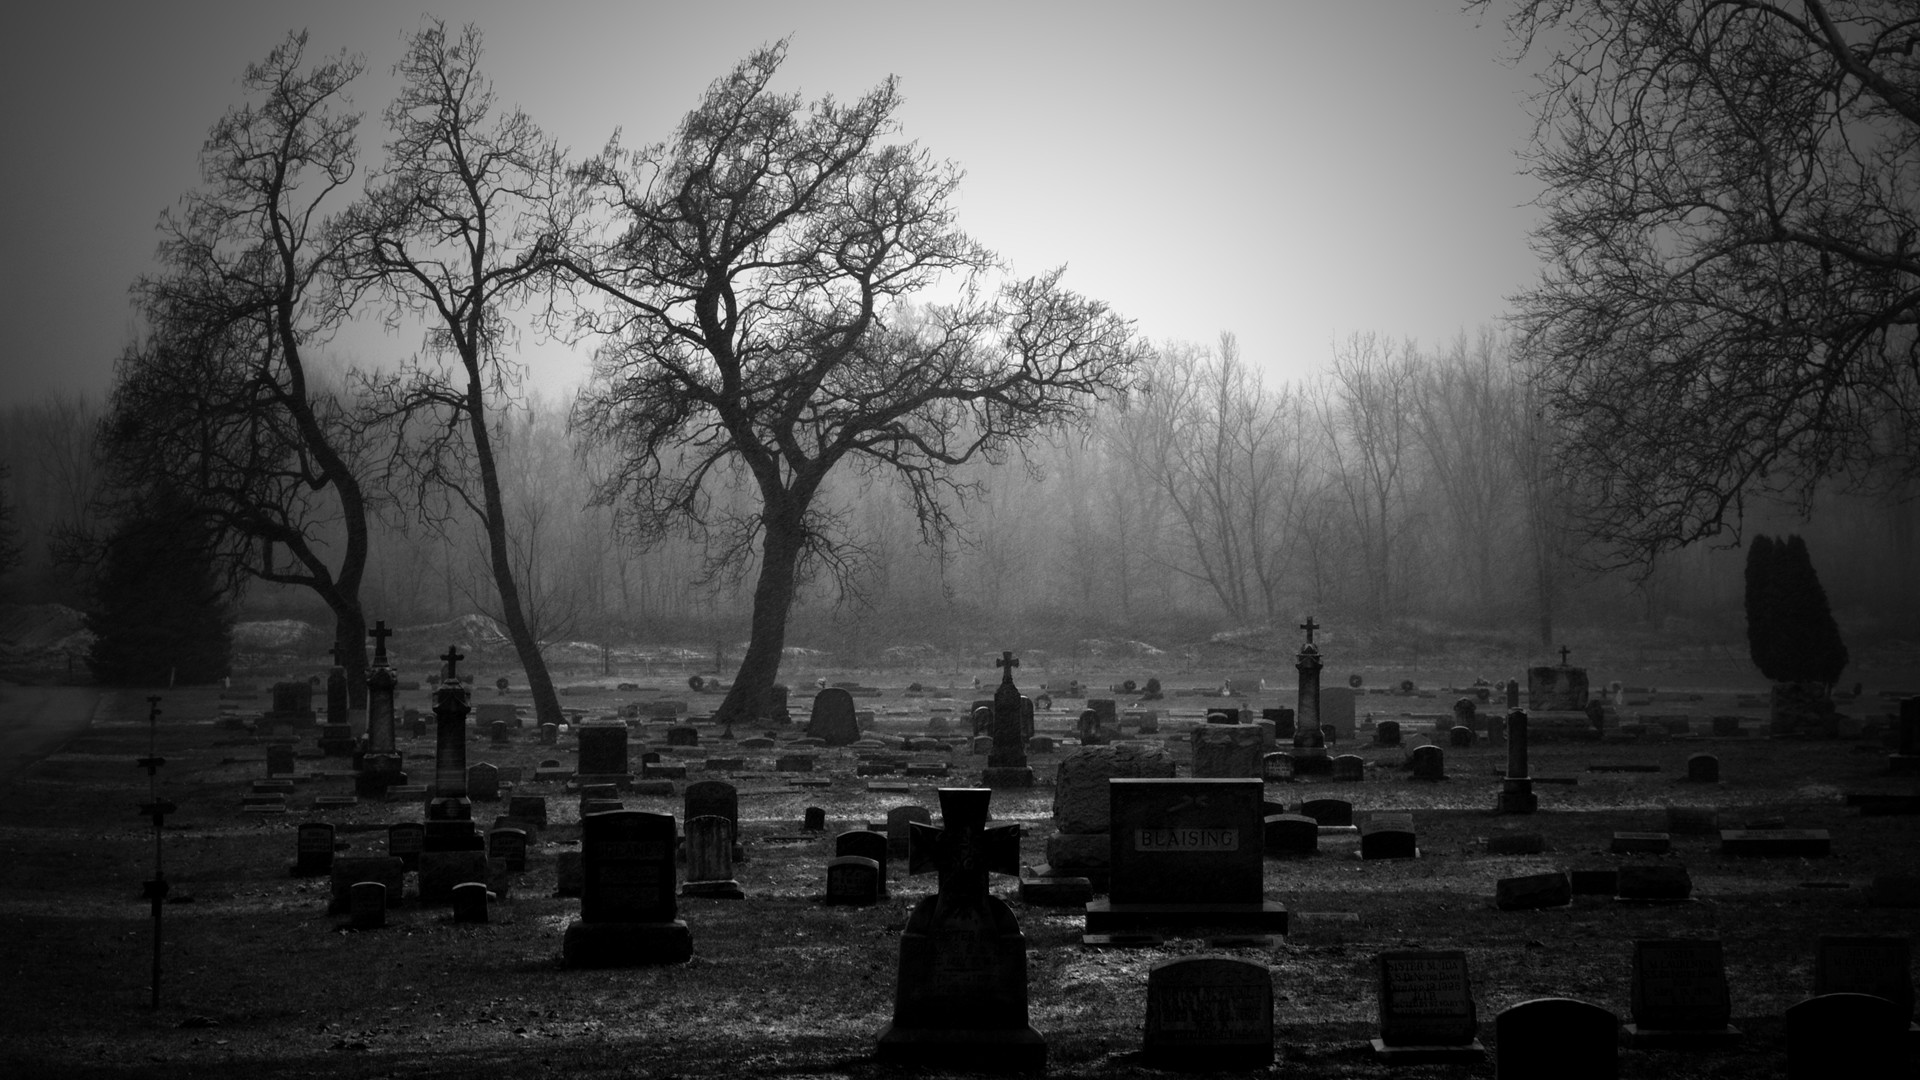 1920x1080 Cemetery. | Cemetery BW Tombstones Trees wallpaper. Cemetery Religious  desktop ...